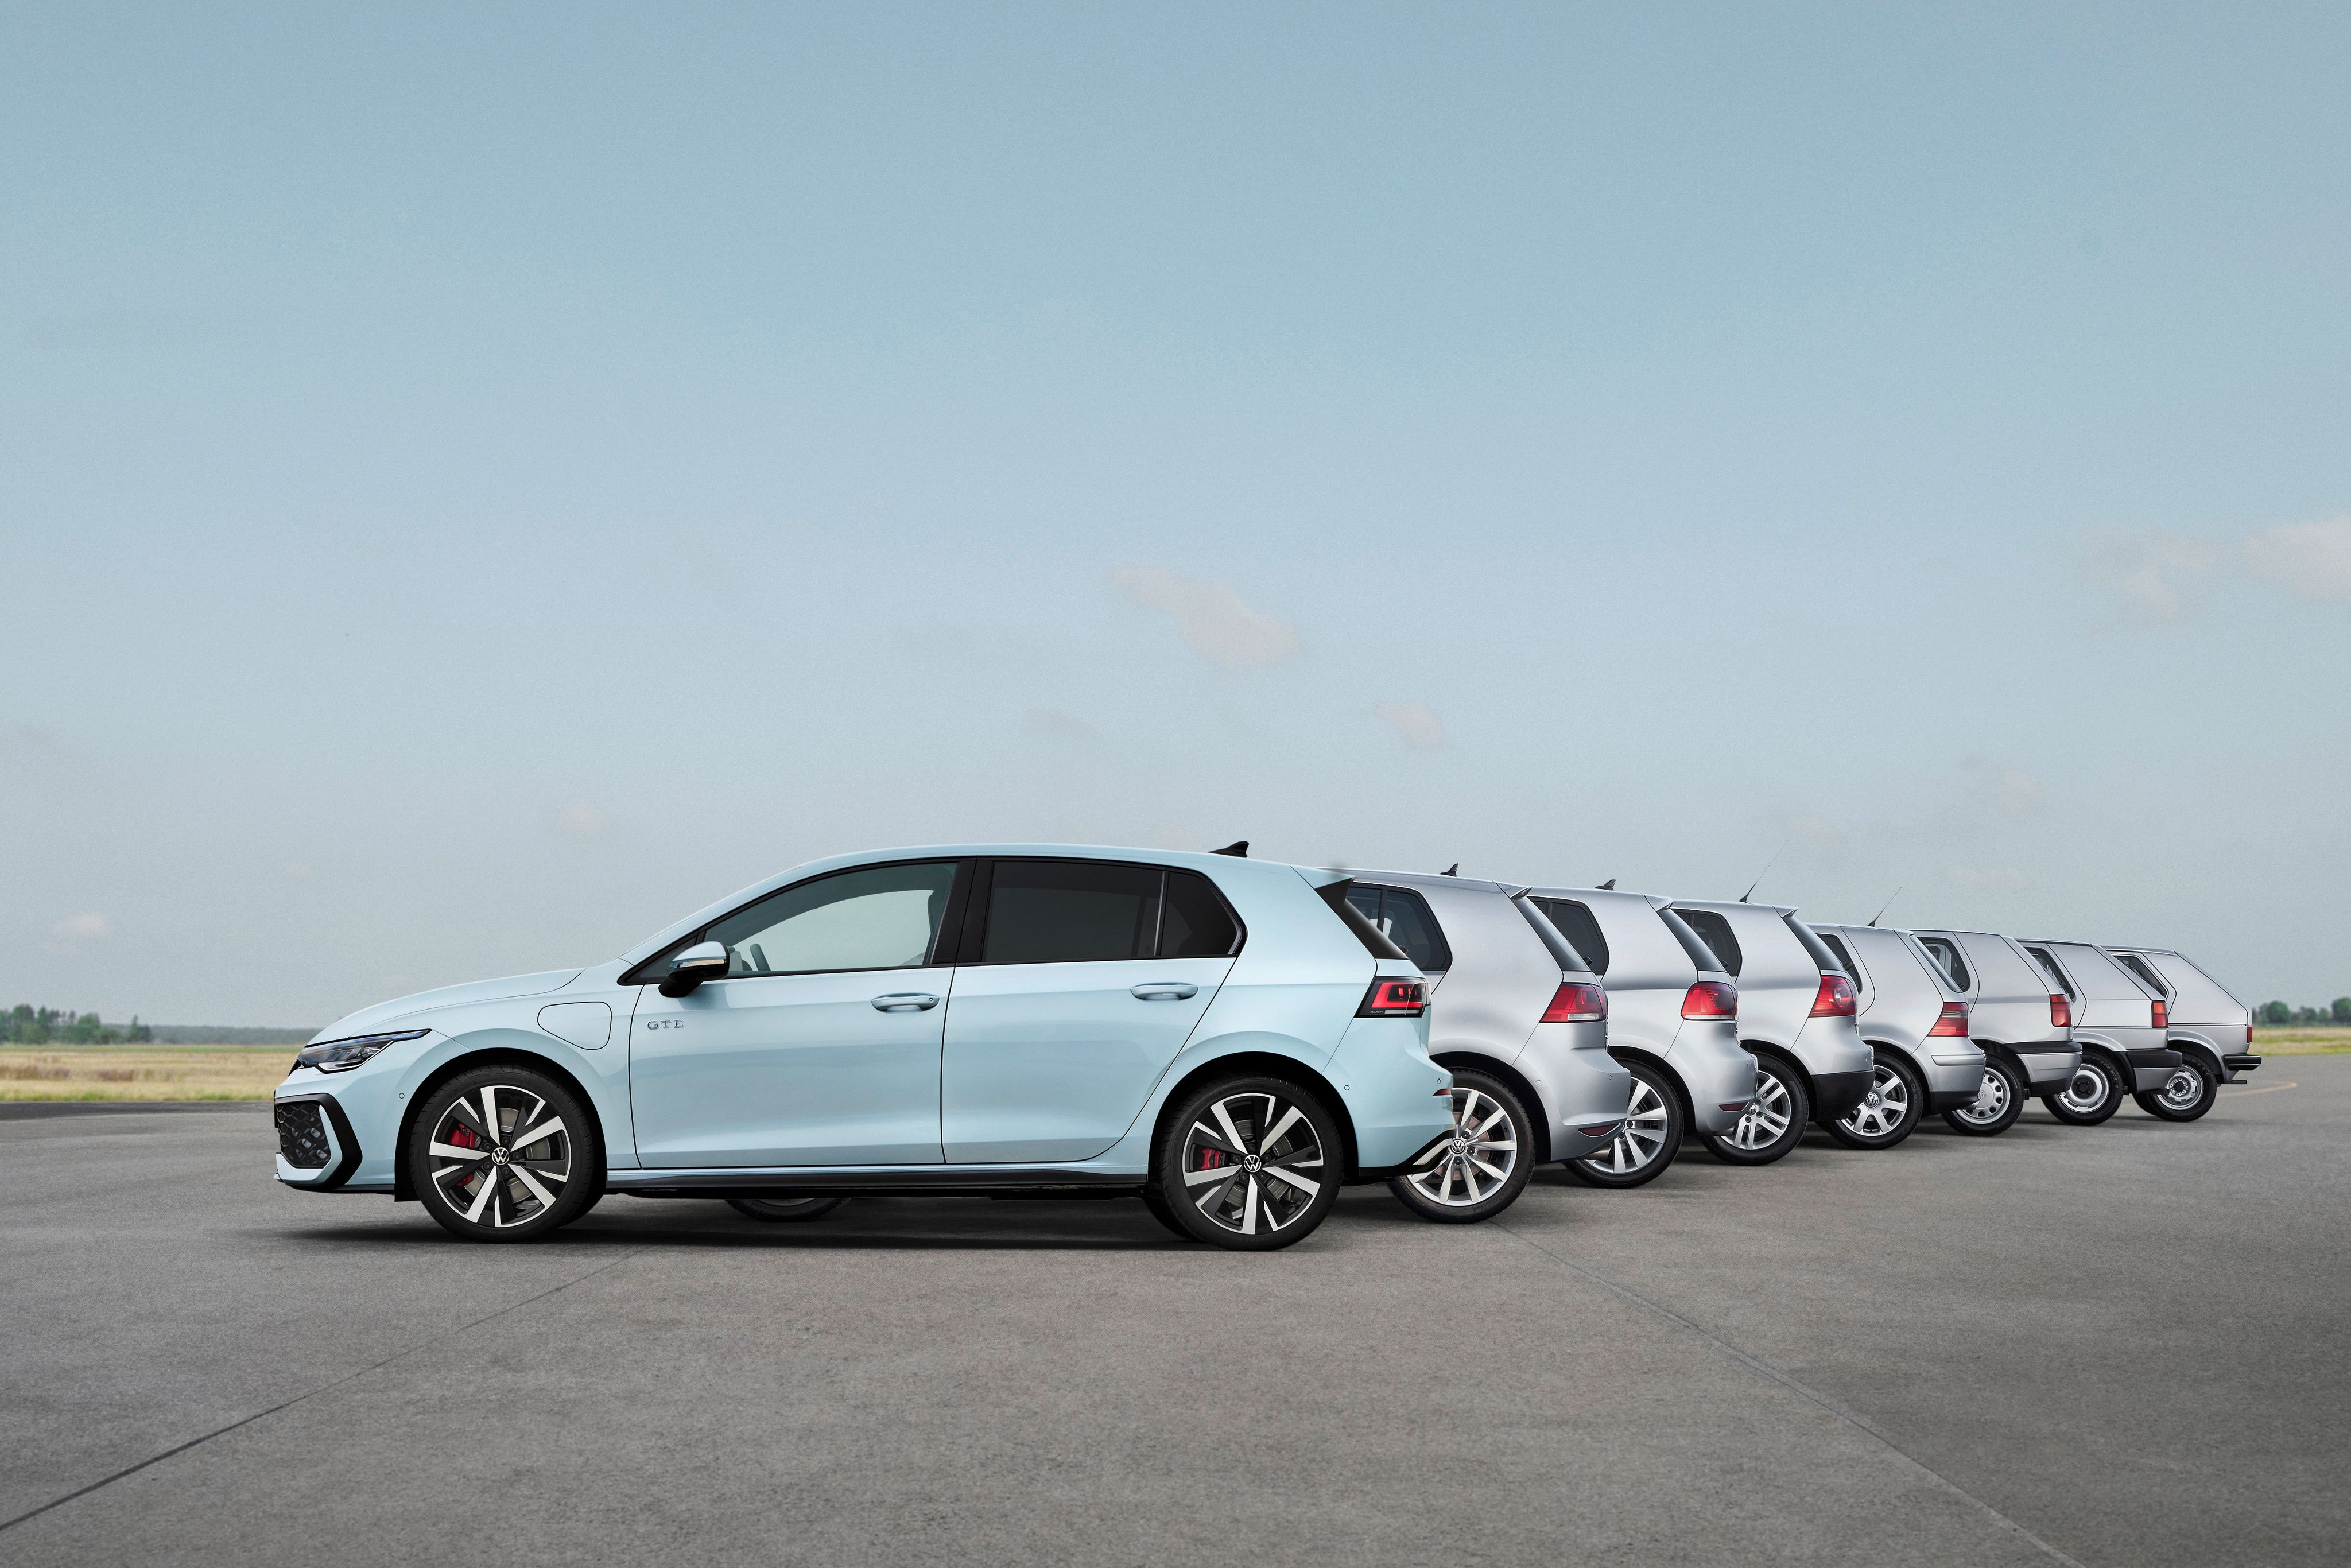 Volkswagen Golf Generations lineup